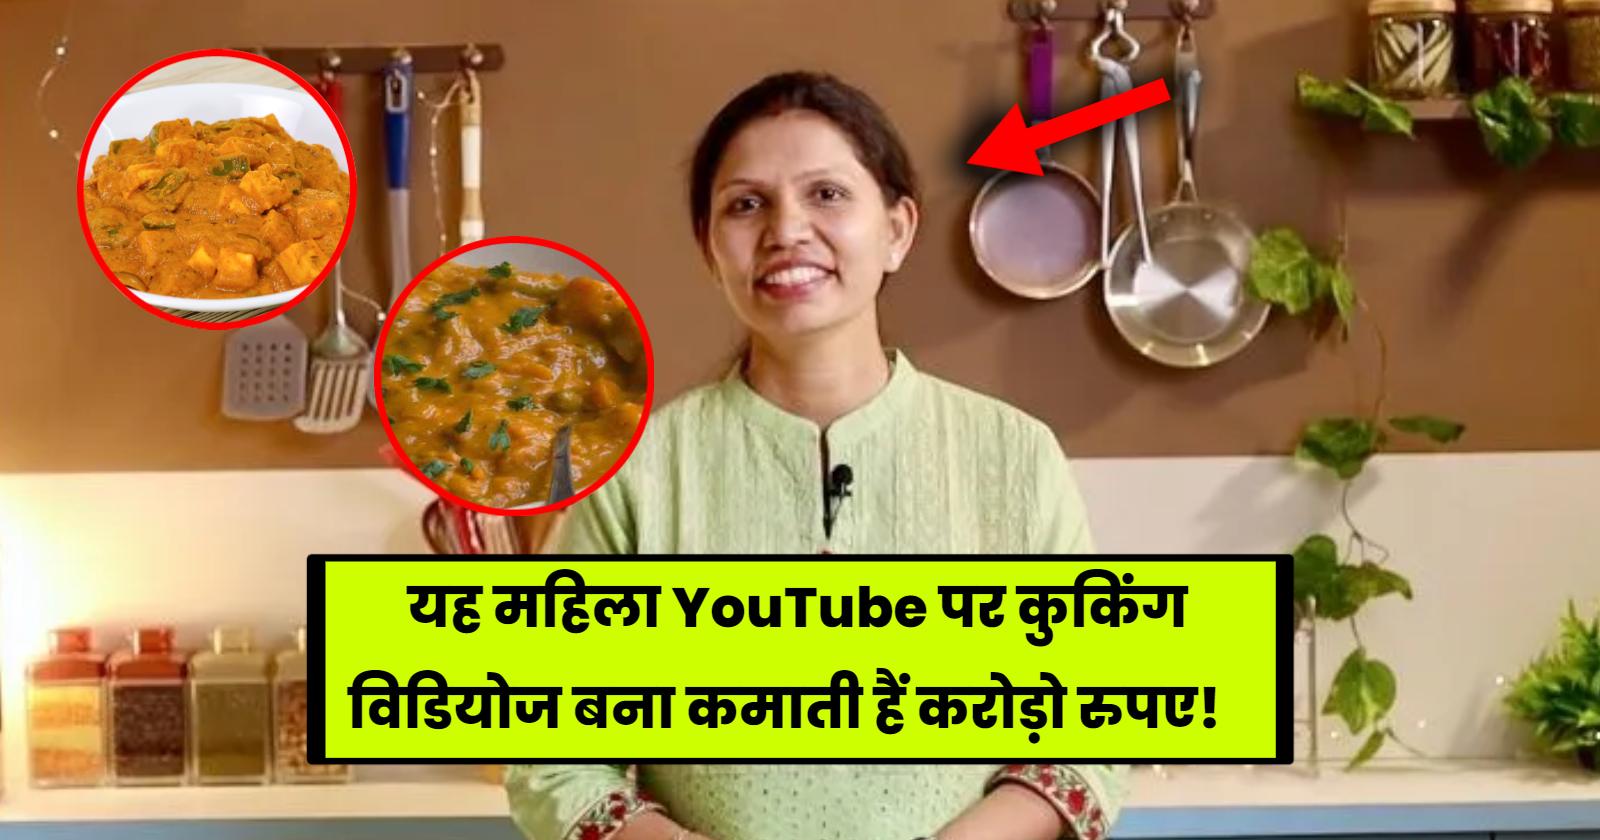 यह महिला YouTube पर कुकिंग विडियोज बना कमाती हैं करोड़ो रुपए! hinditonews.in